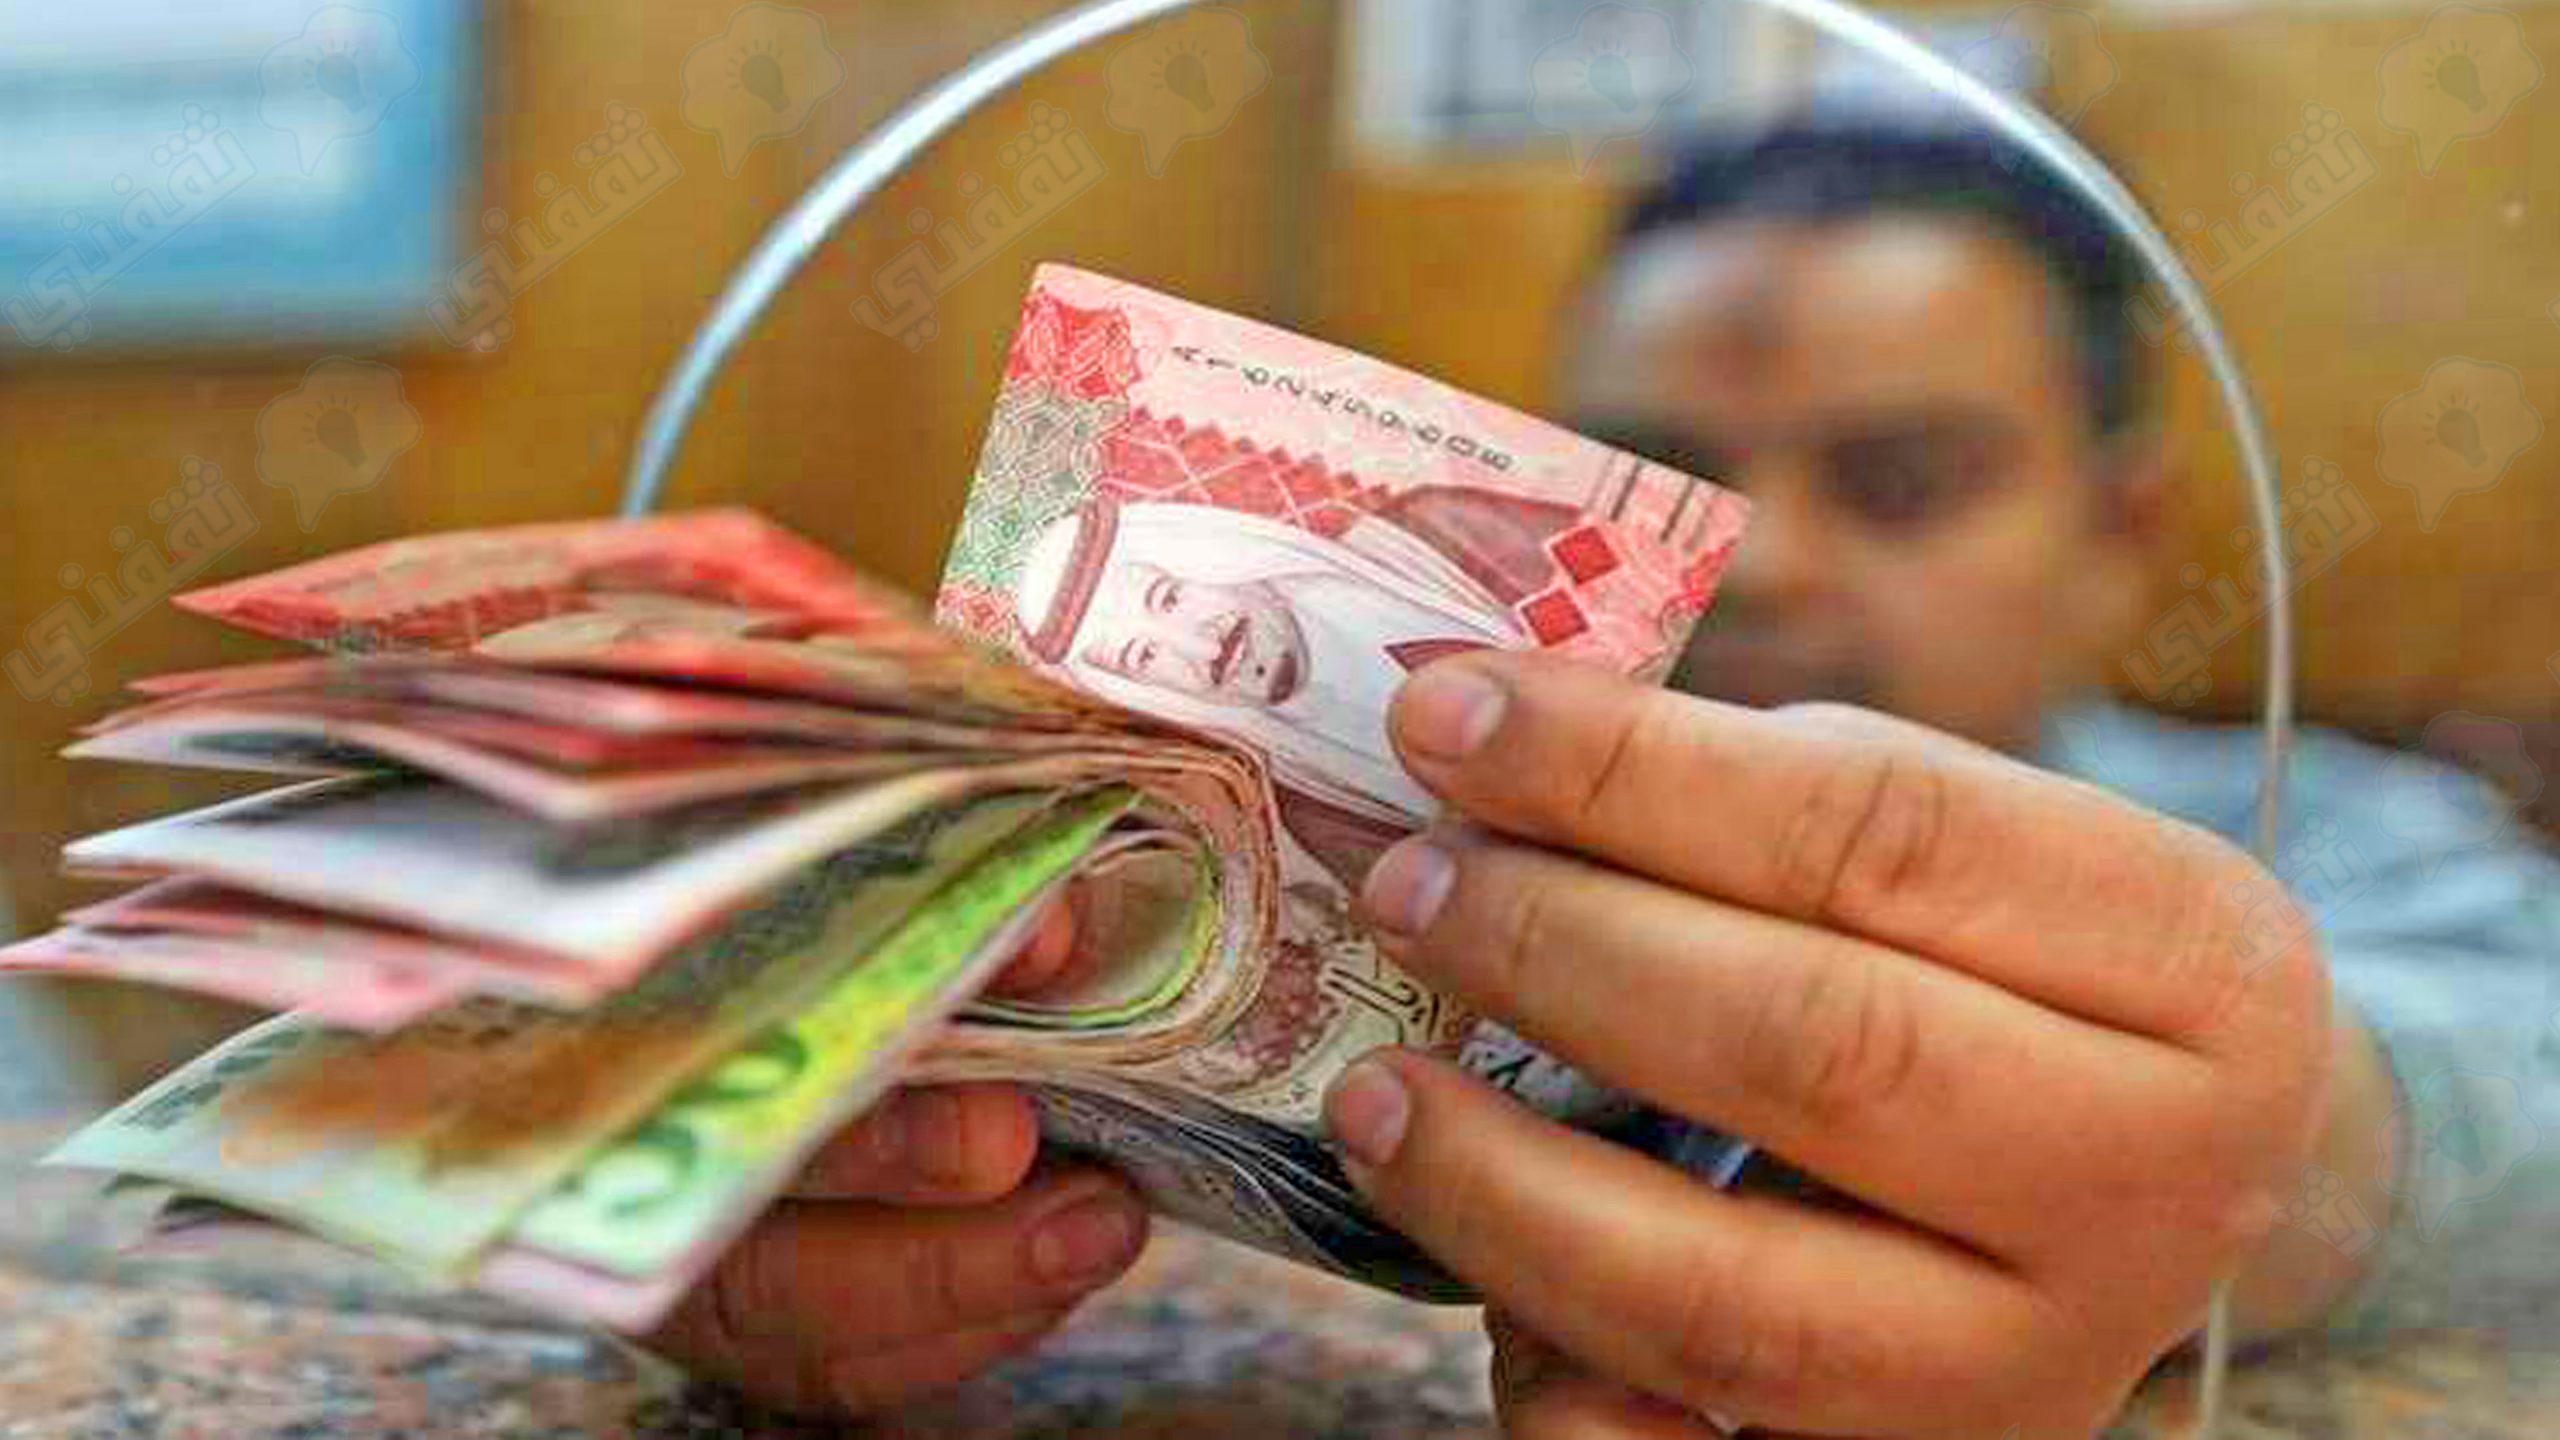 قرض شخصي سريع بدون كفيل من بنك الرياض 300 ألف ريال من غير تحويل راتب.jpg